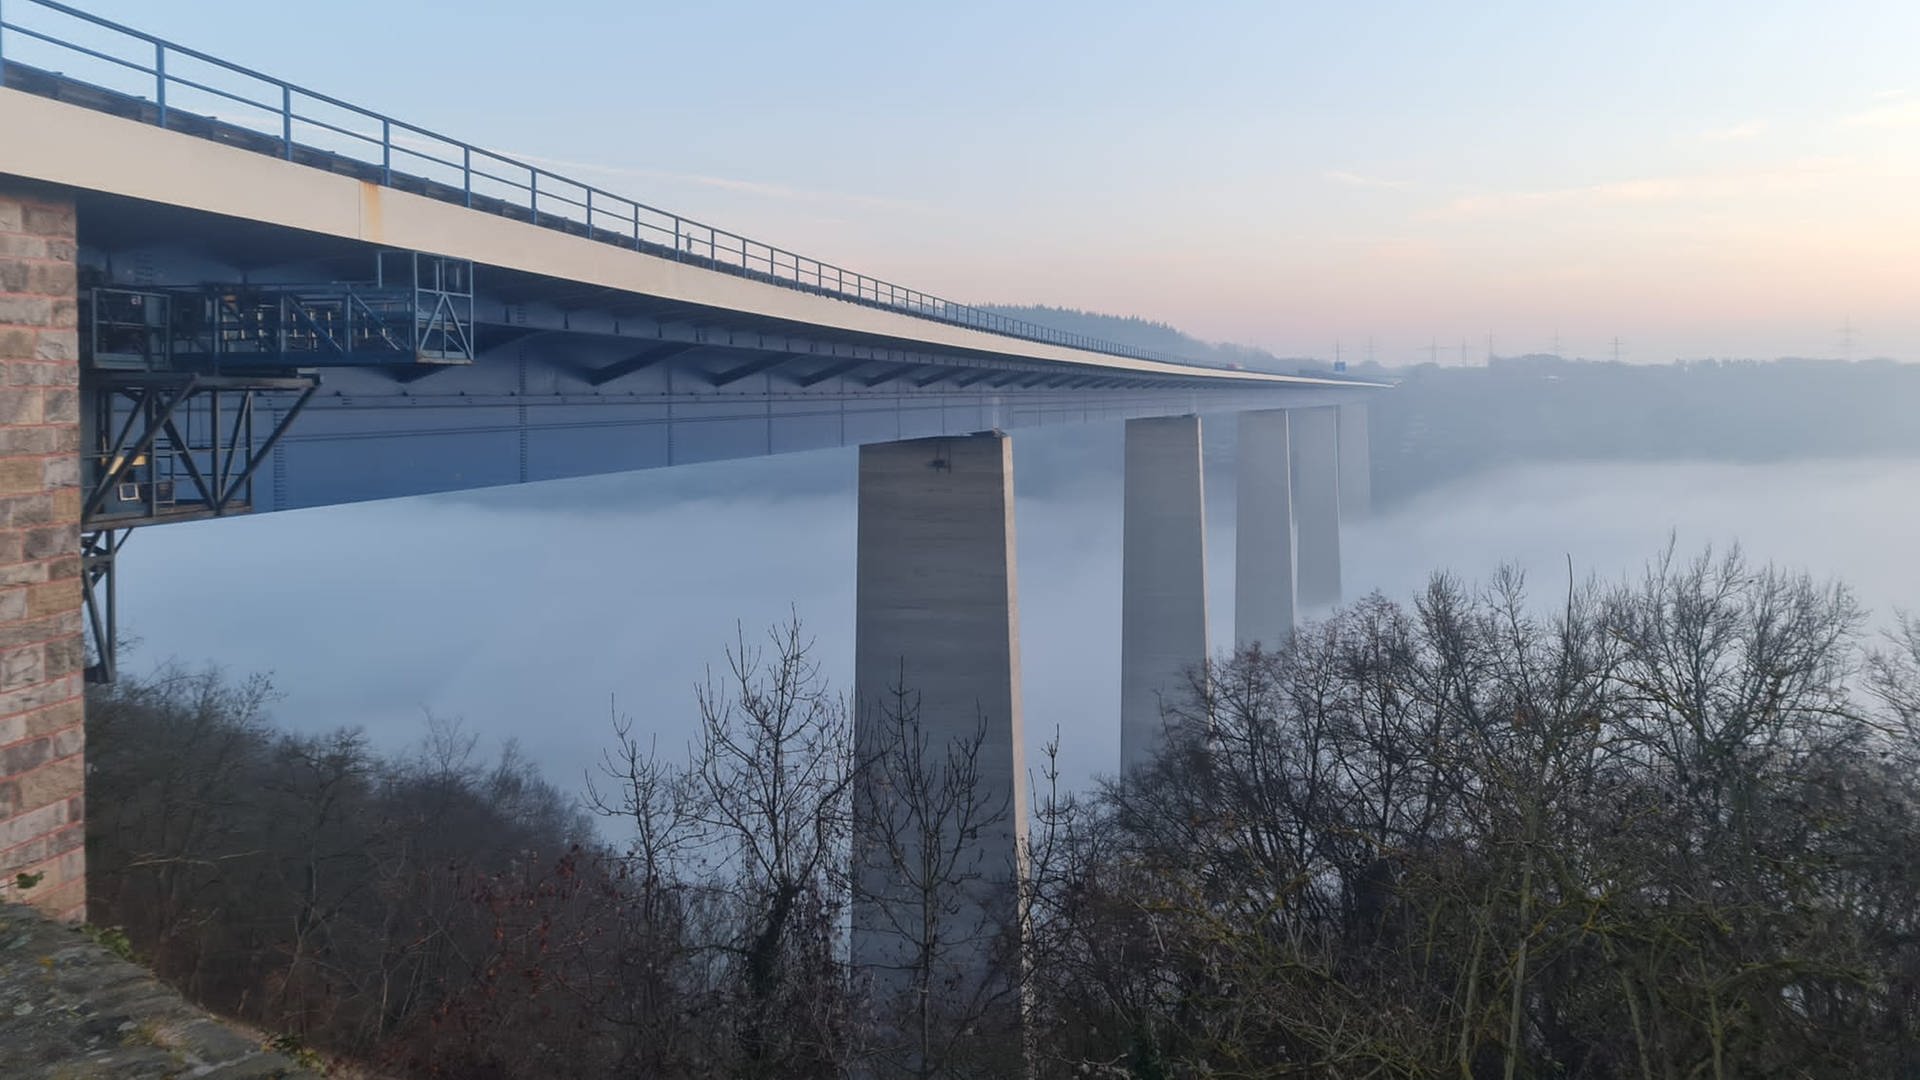 Belastungstest: Moseltalbrücke der A61 am Sonntag voll gesperrt